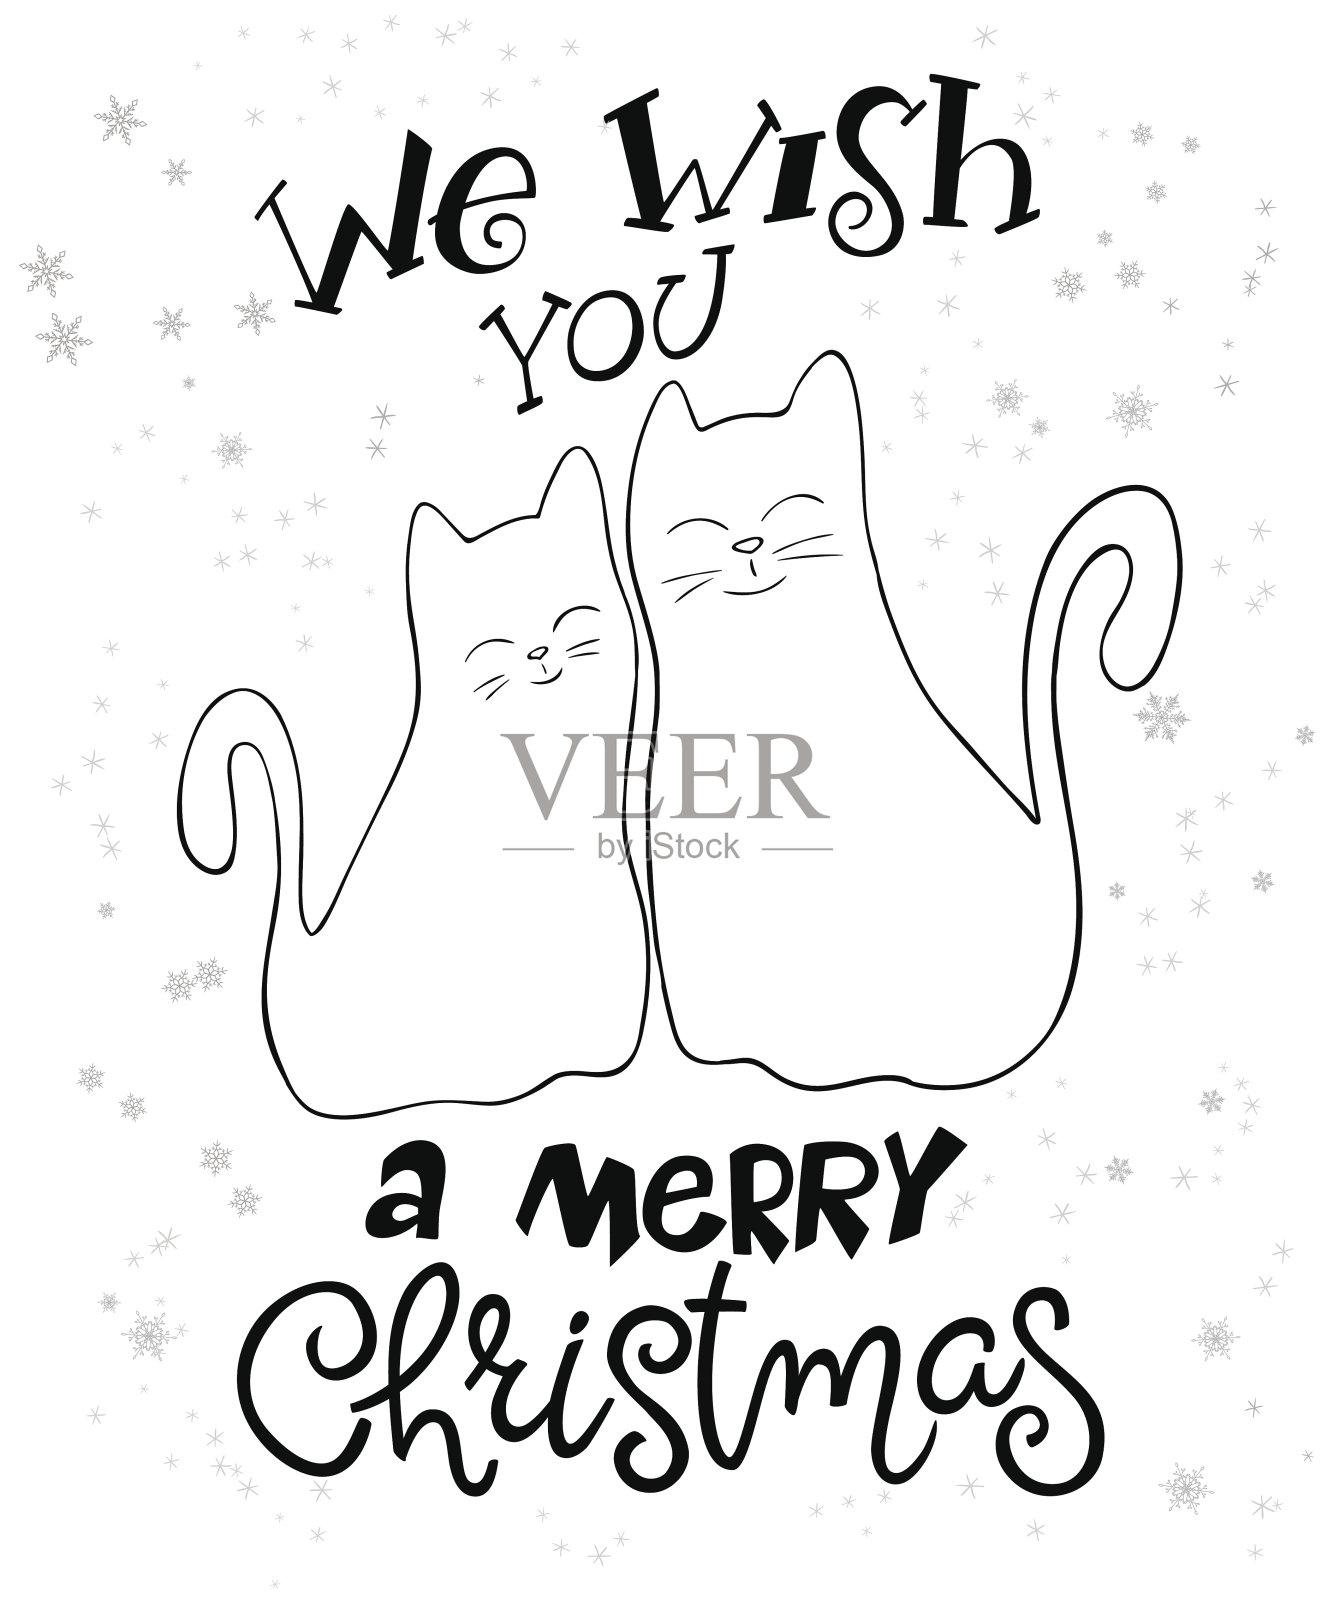 用雪花写圣诞祝福的猫咪插画图片素材